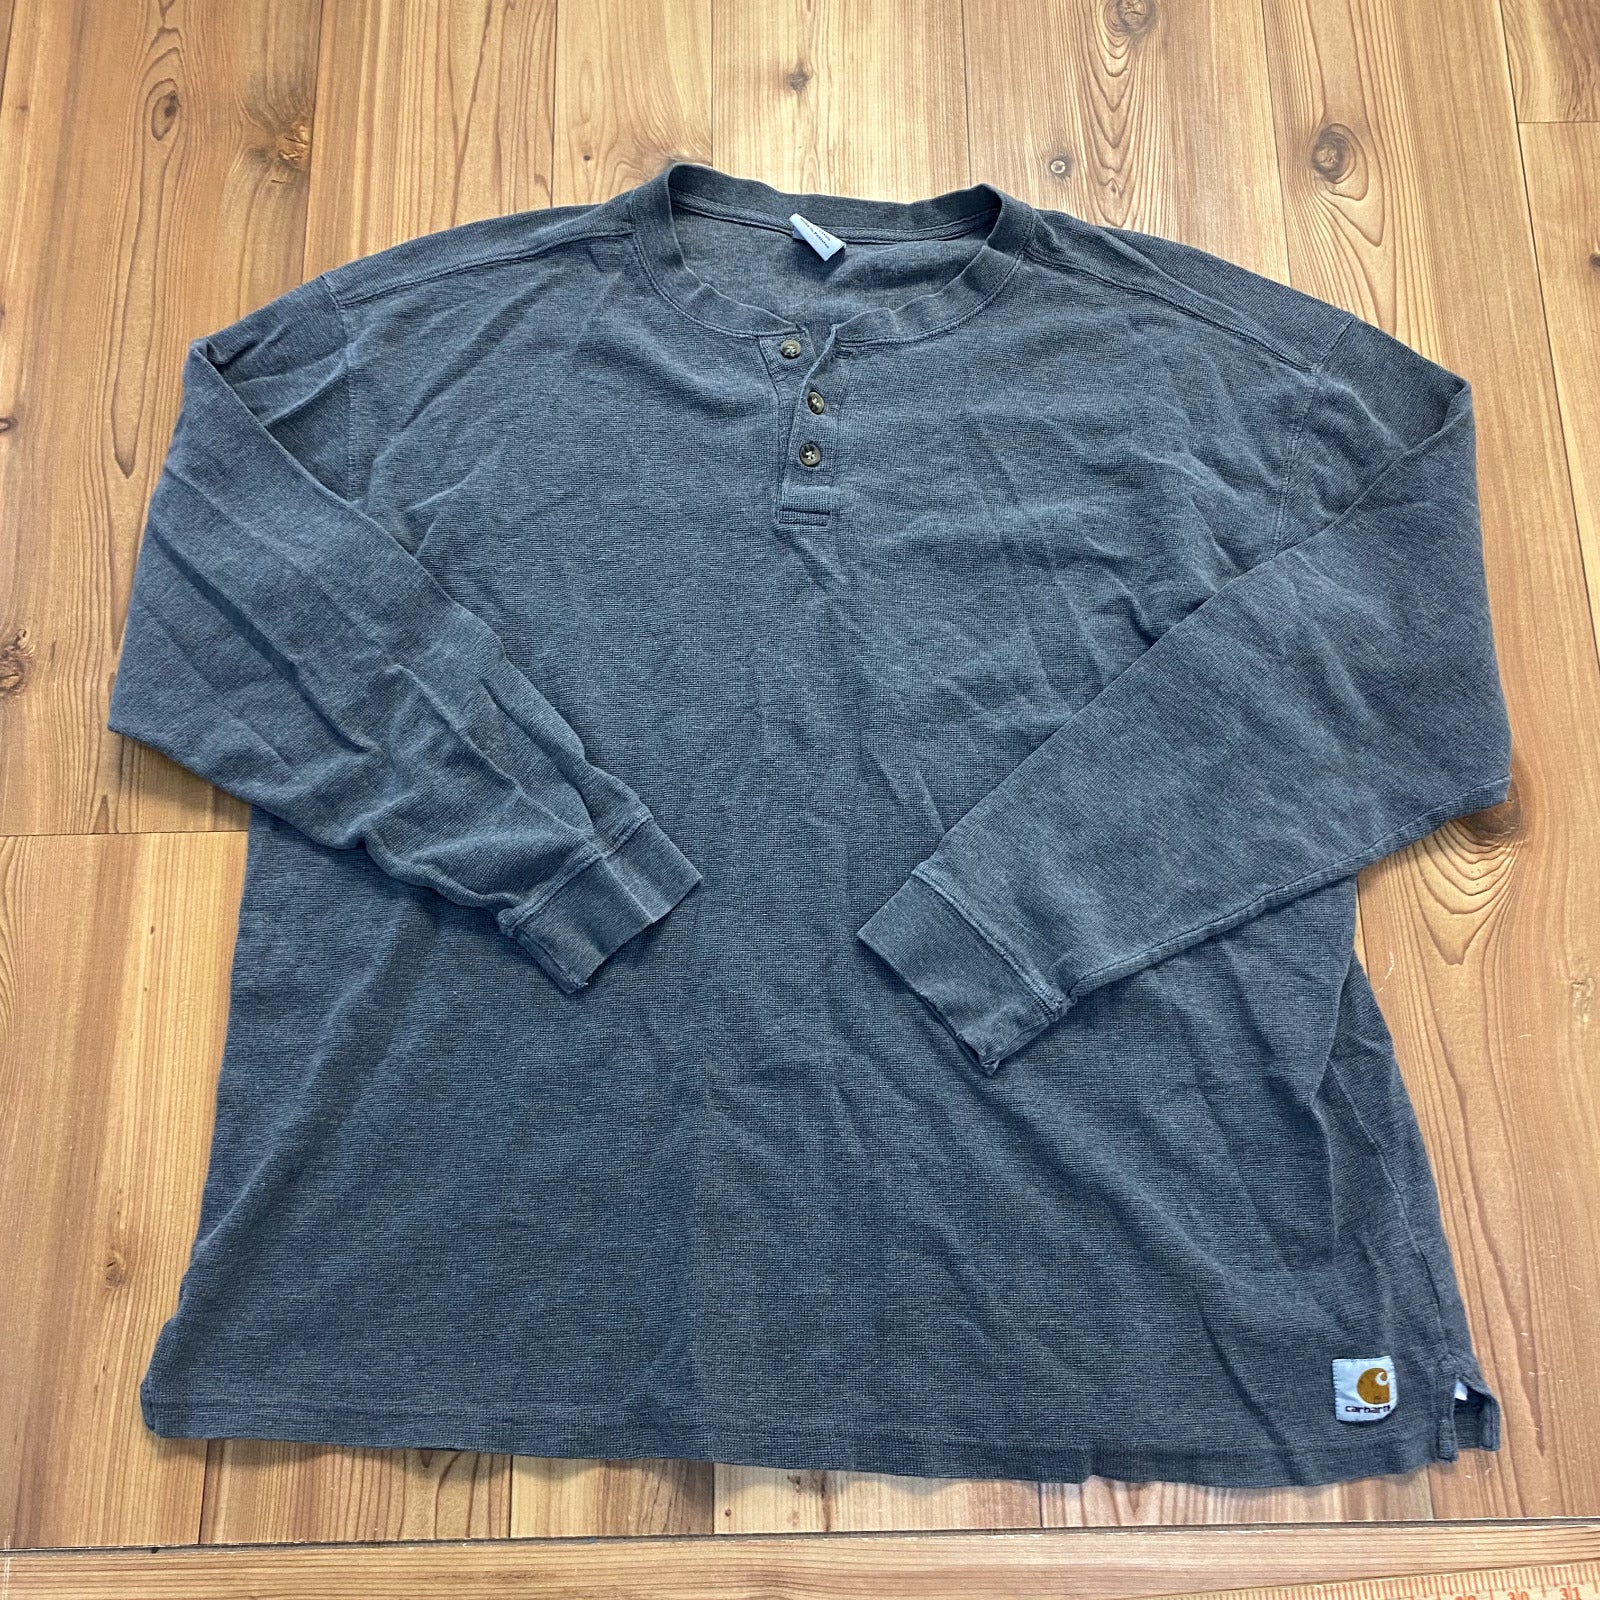 Carhartt Gray Pullover Long Sleeve Cotton Regular Fit Shirt Adult Size 2XL